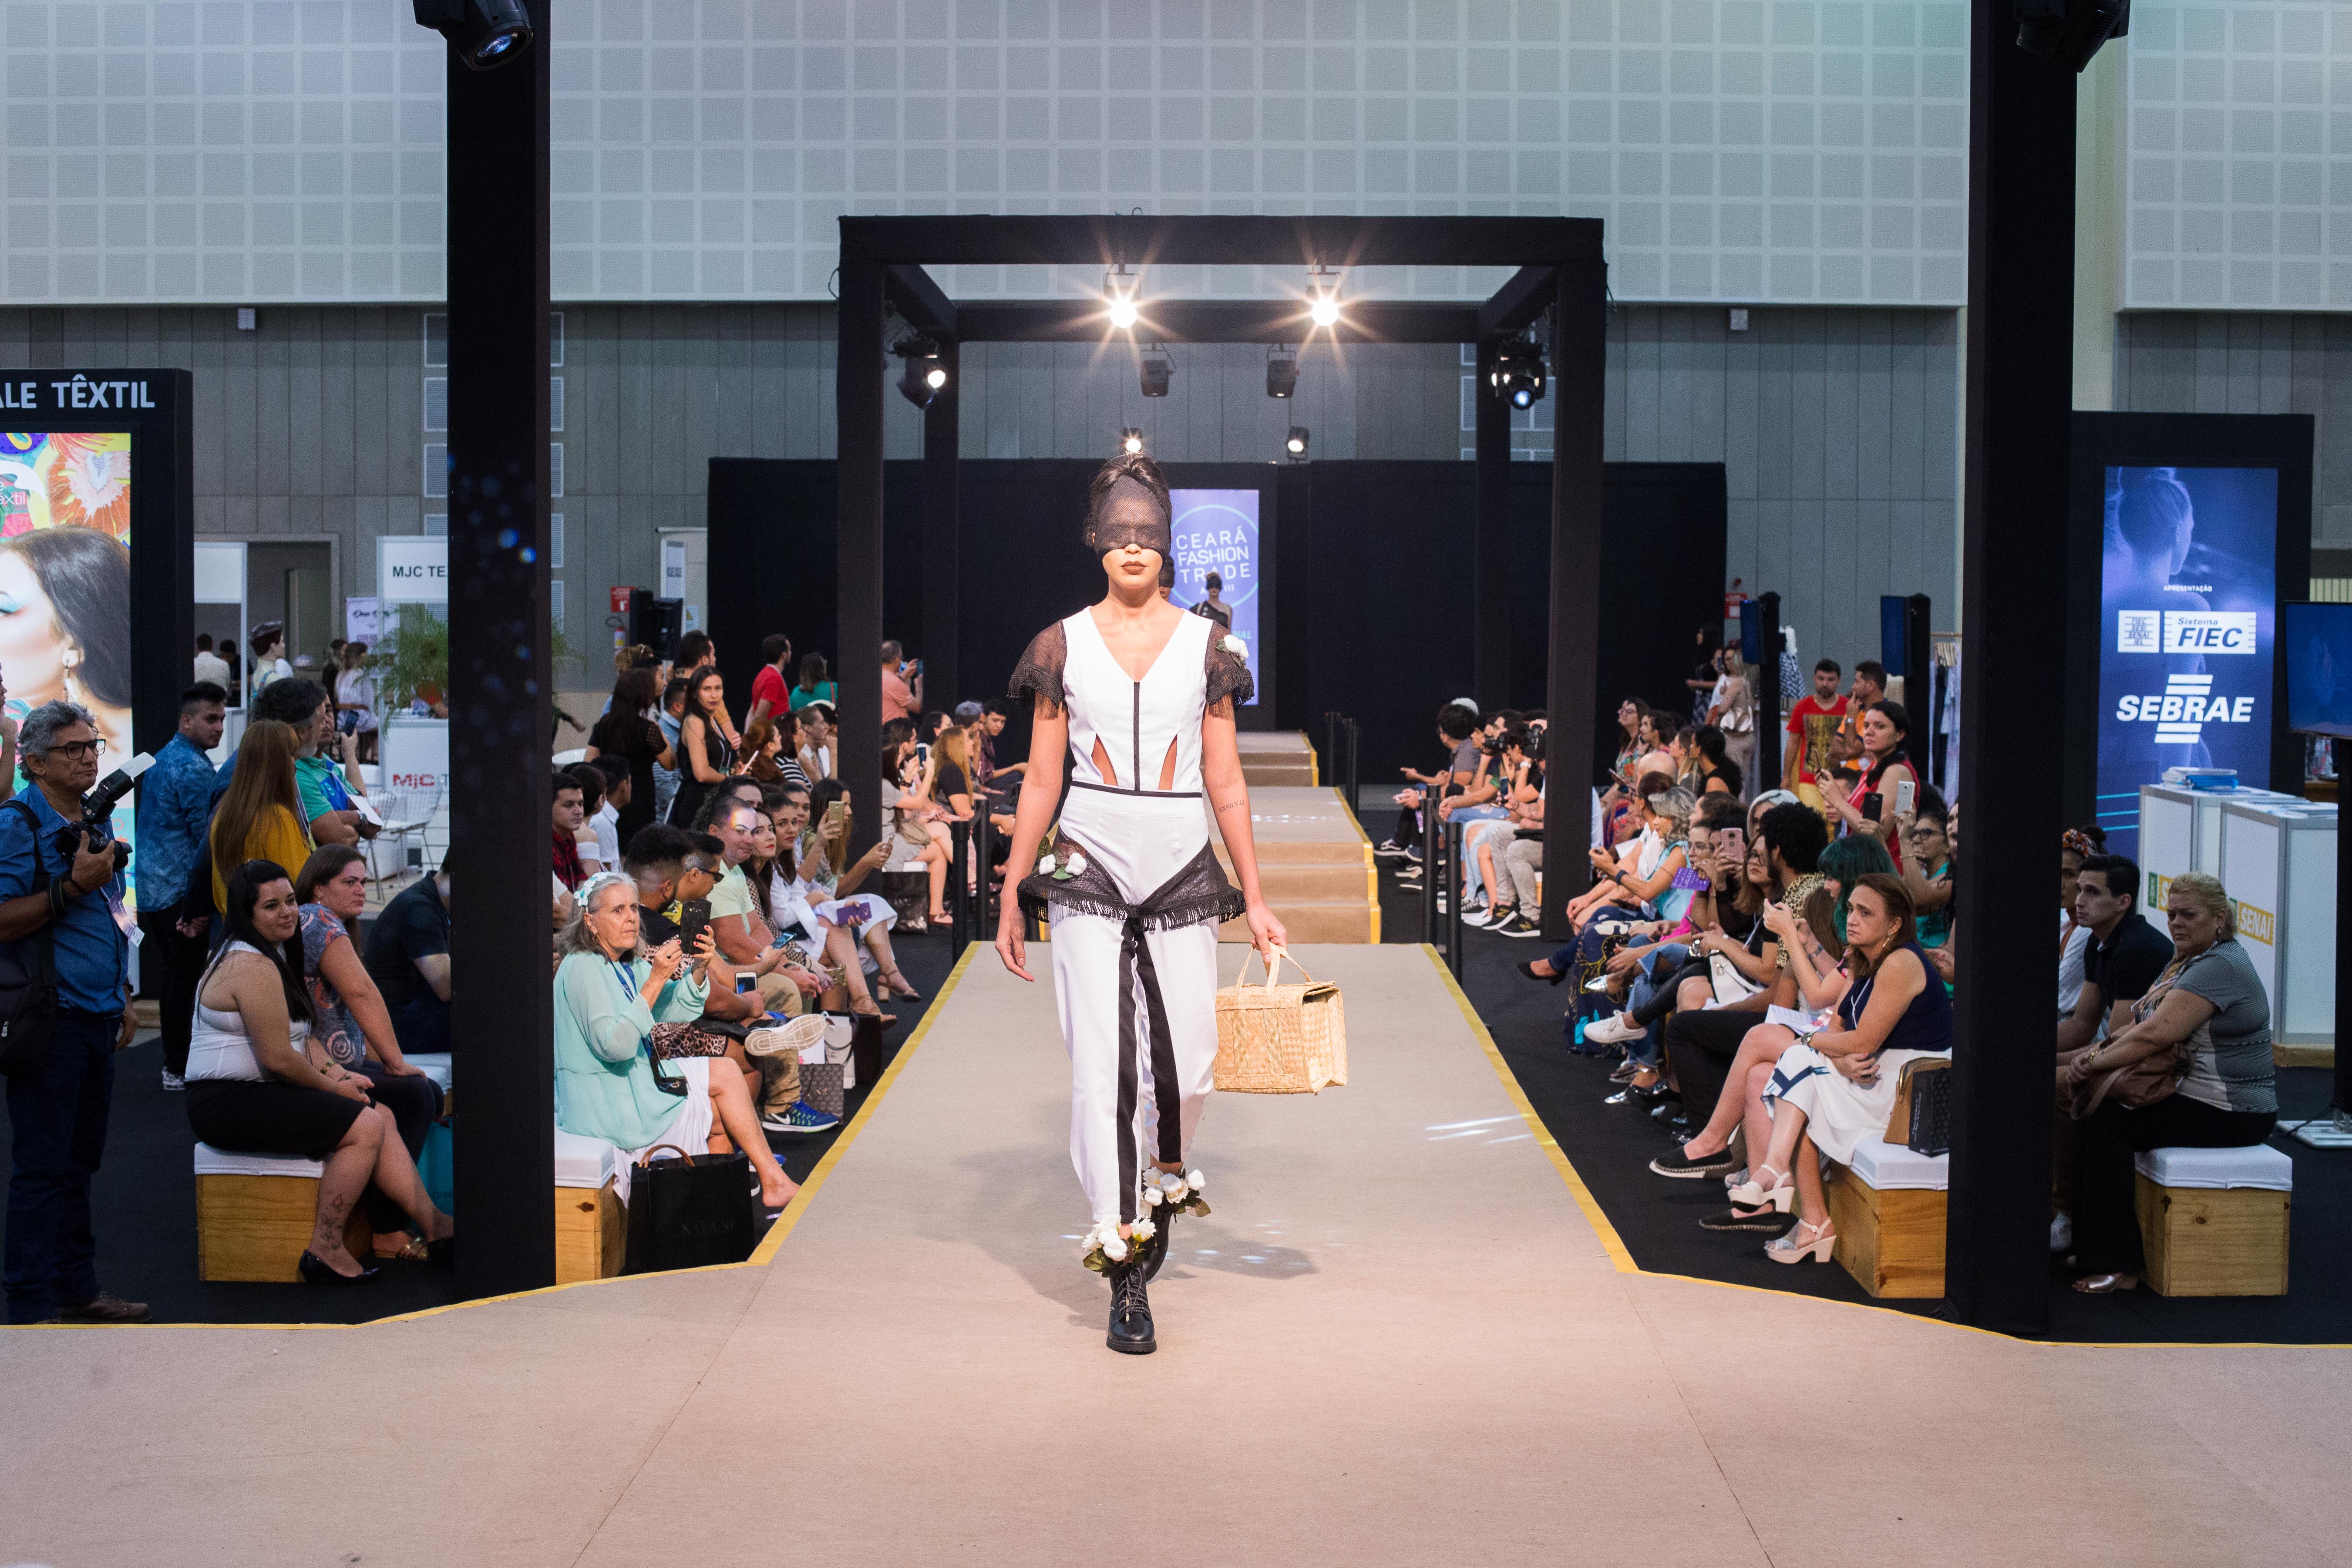 Concurso Ceará Moda Contemporânea chega a 10ª edição impulsionando talentos da indústria local